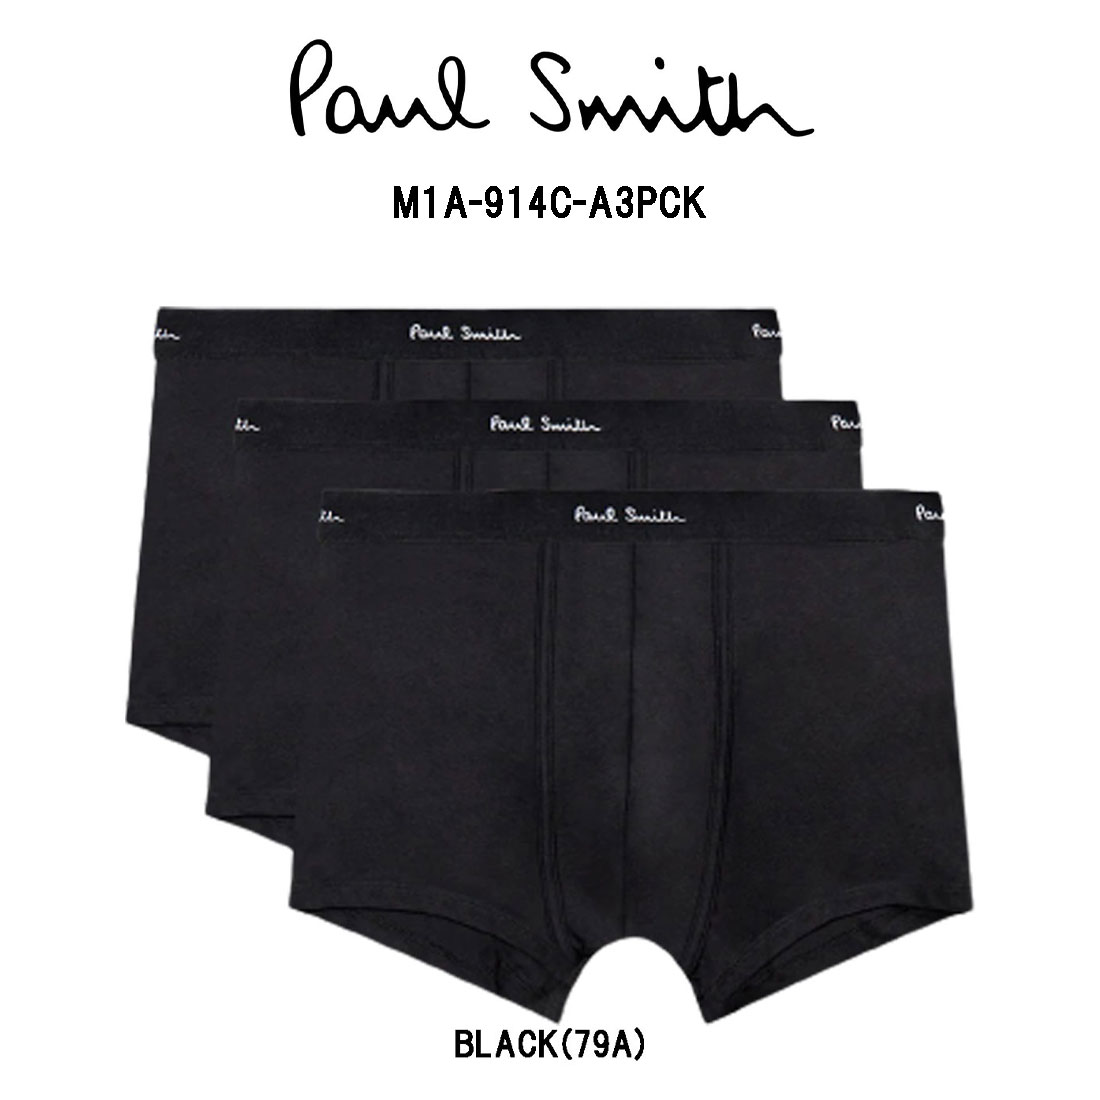 Paul Smith(ポールスミス)ボクサーパンツ 3枚セット パック ギフト メンズ インナー アンダーウェア 男性用下着 M1A-914C-A3PCK